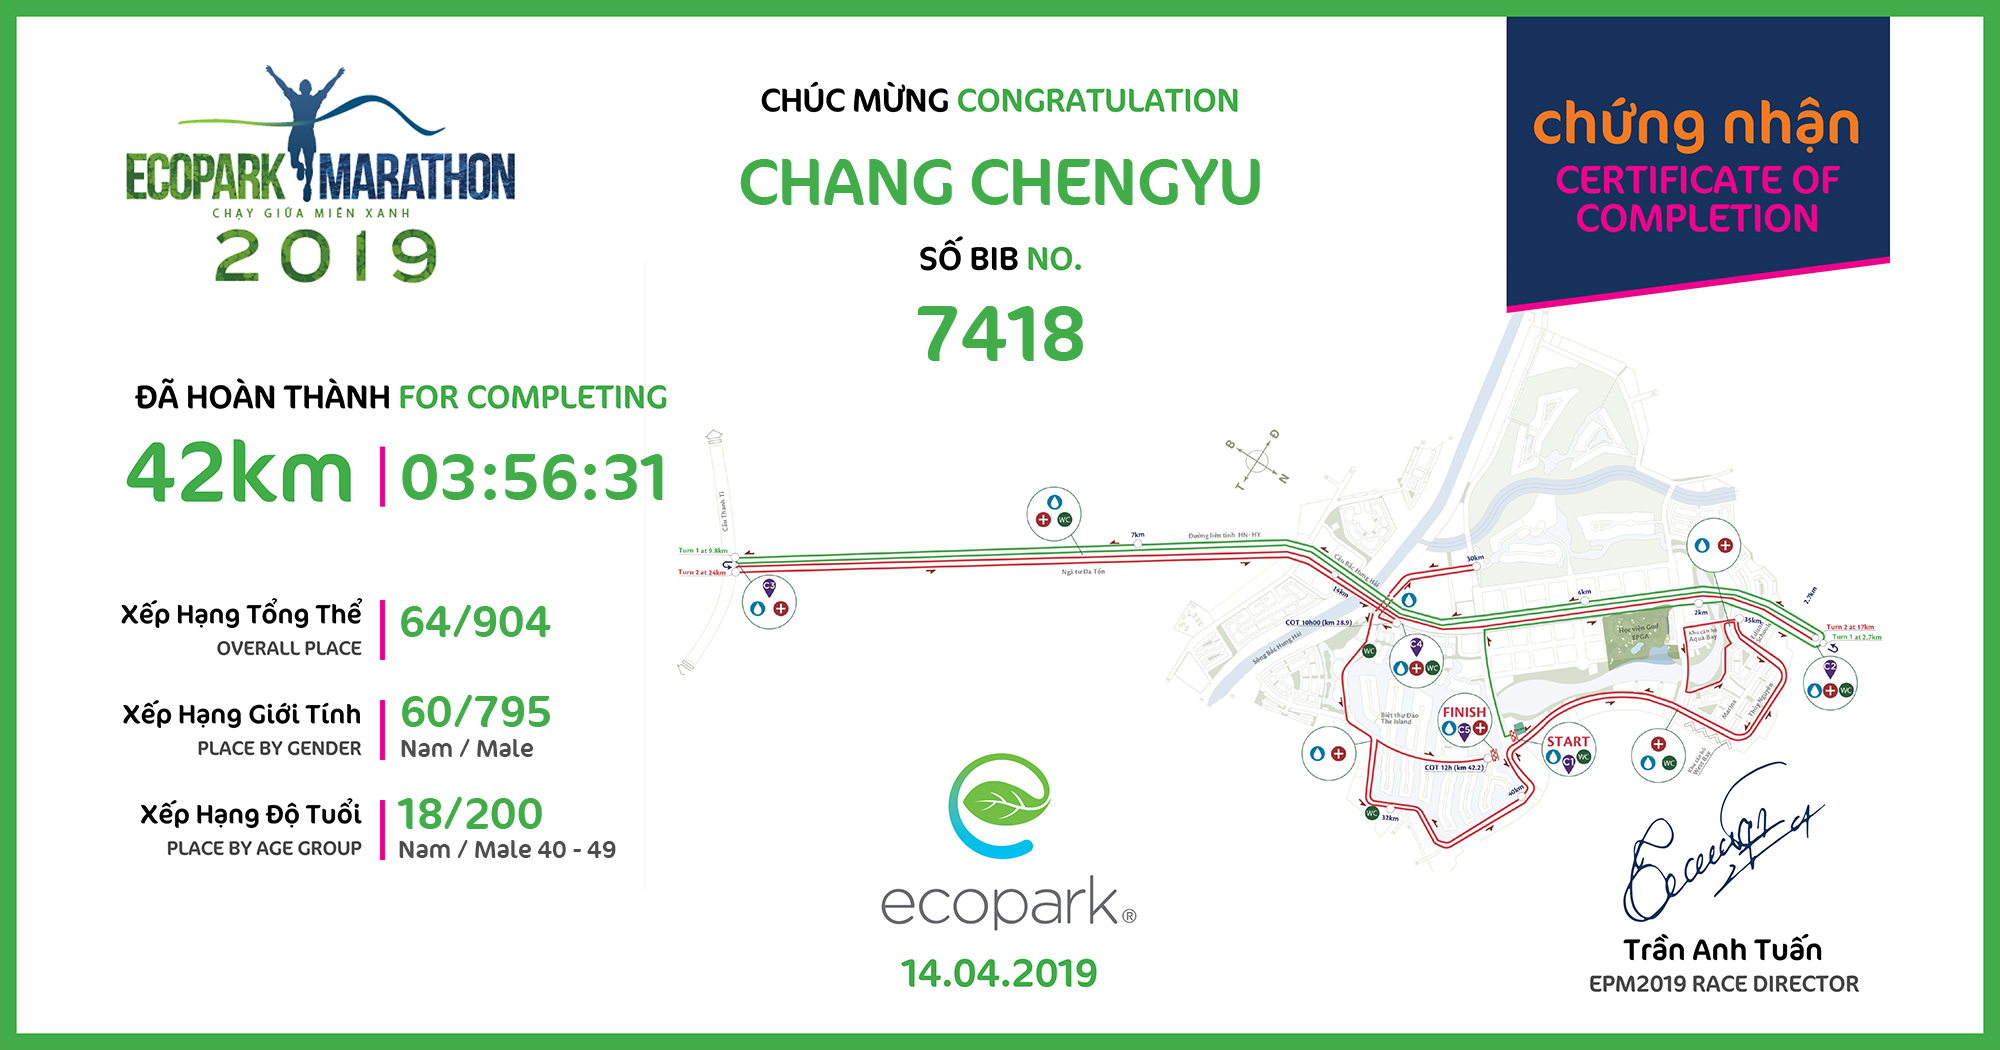 7418 - Chang ChengYu